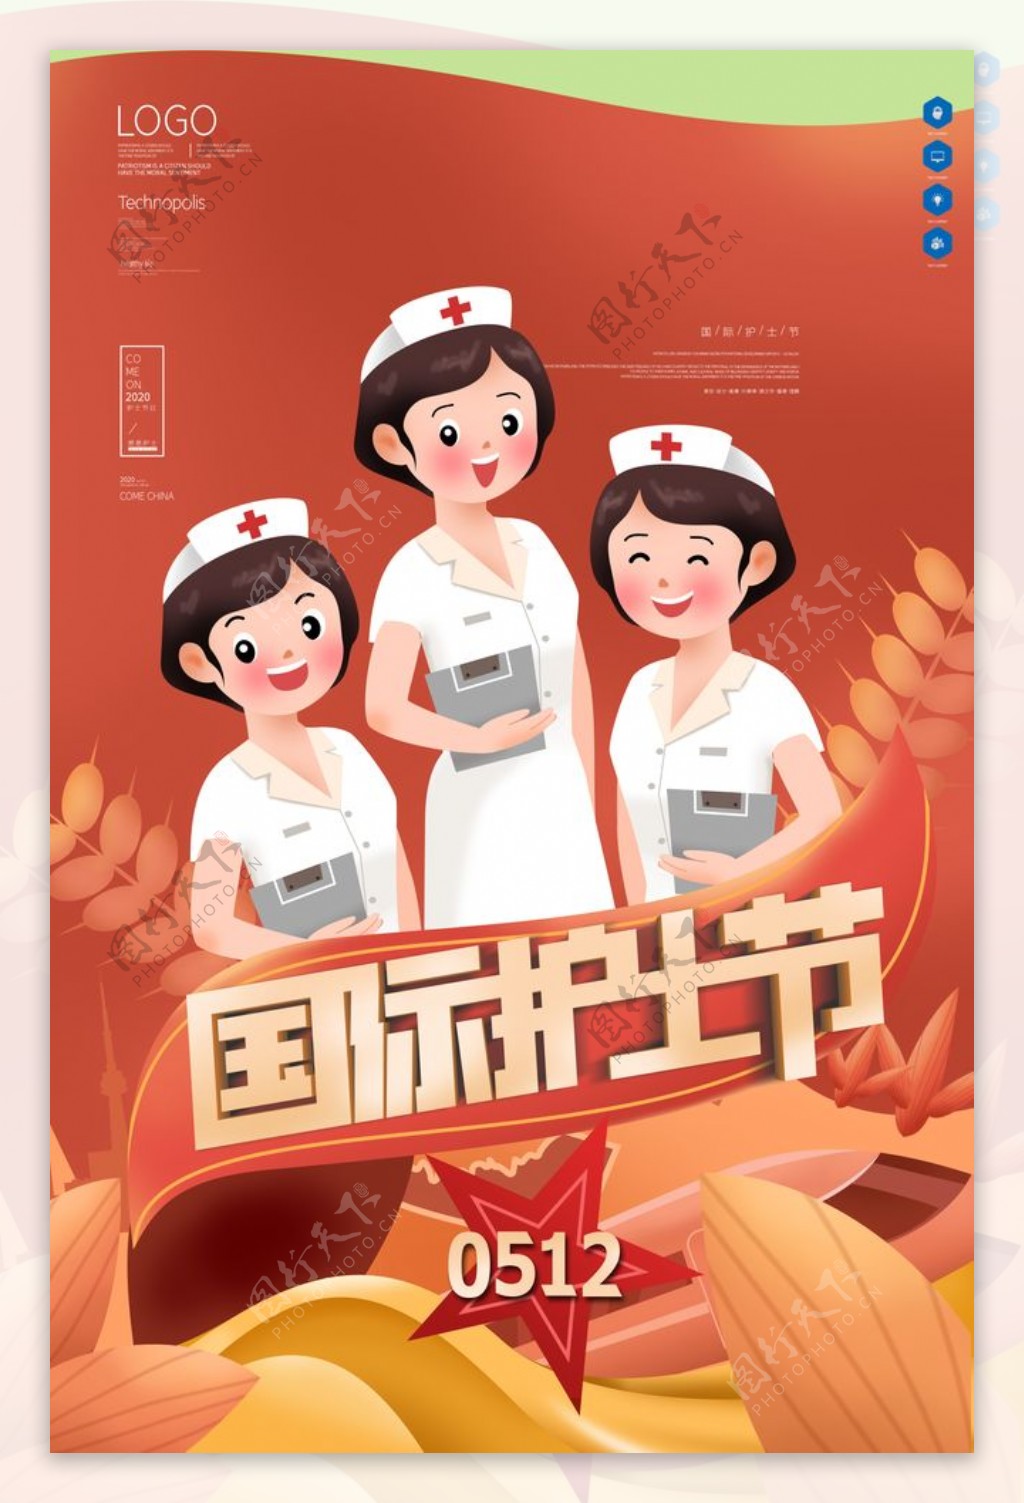 国际护士节原创宣传海报设计